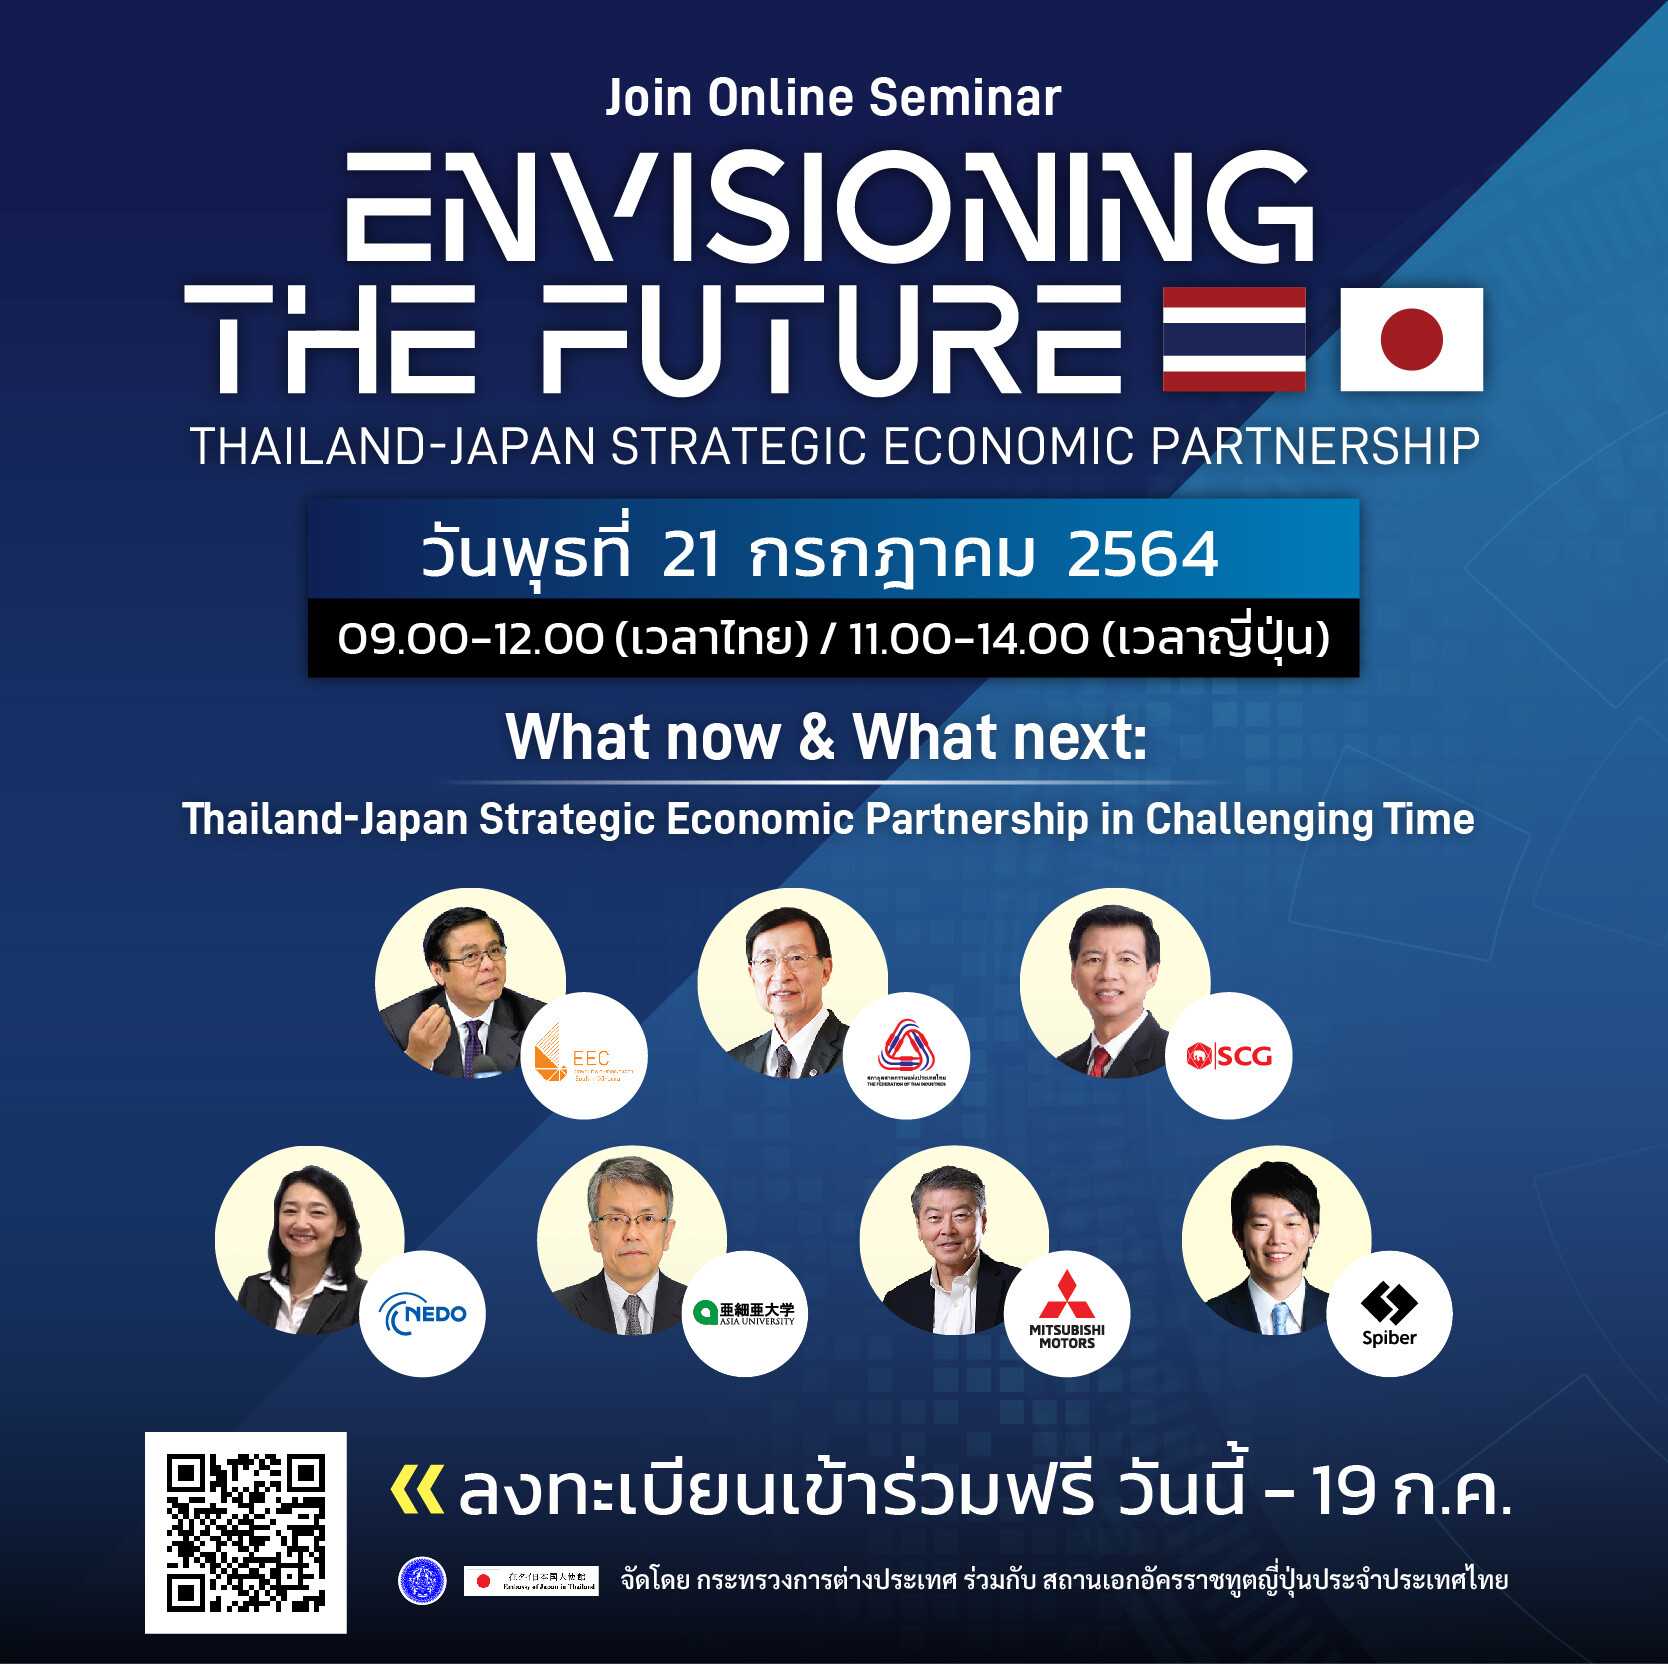 เชิญร่วมรับฟังสัมมนาออนไลน์เชิงวิชาการ ในหัวข้อ "Envisioning the Future : Thailand-Japan Strategic Economic Partnership"